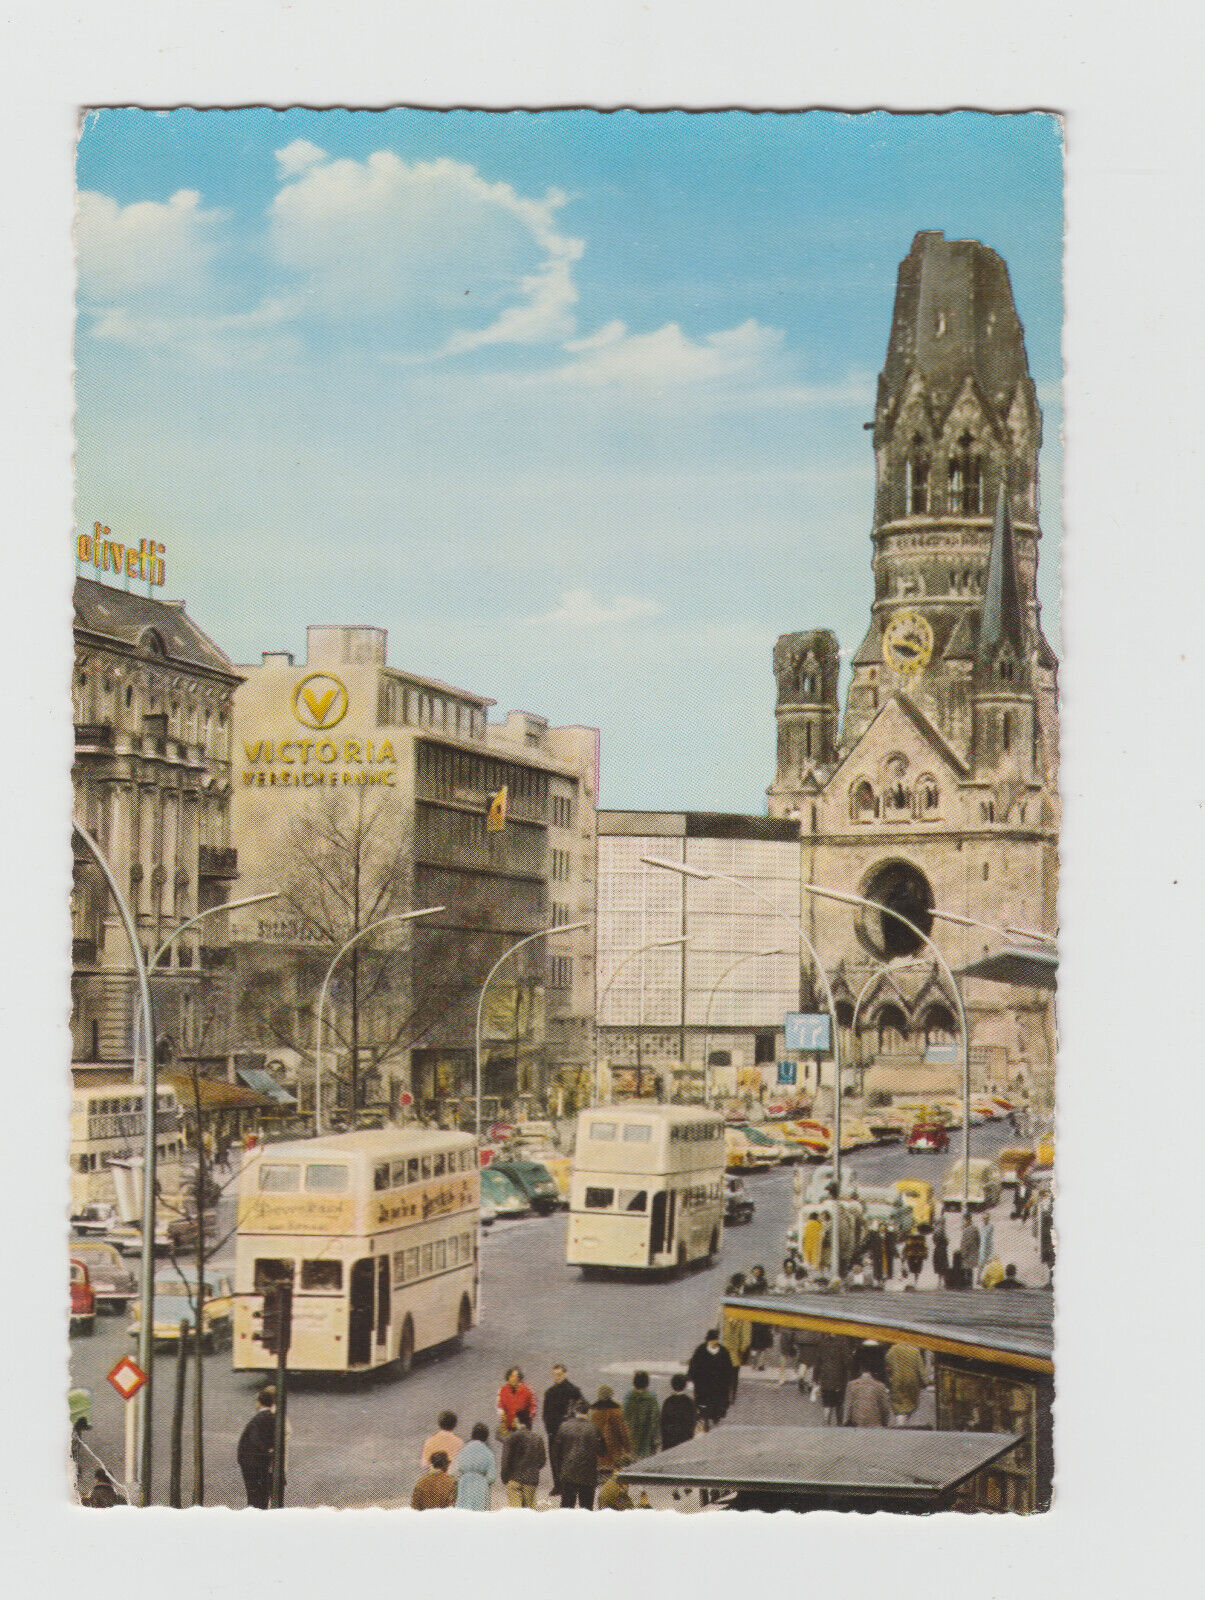 c. 1970s Berlin Street View Germany - Vintage Postcard 1145